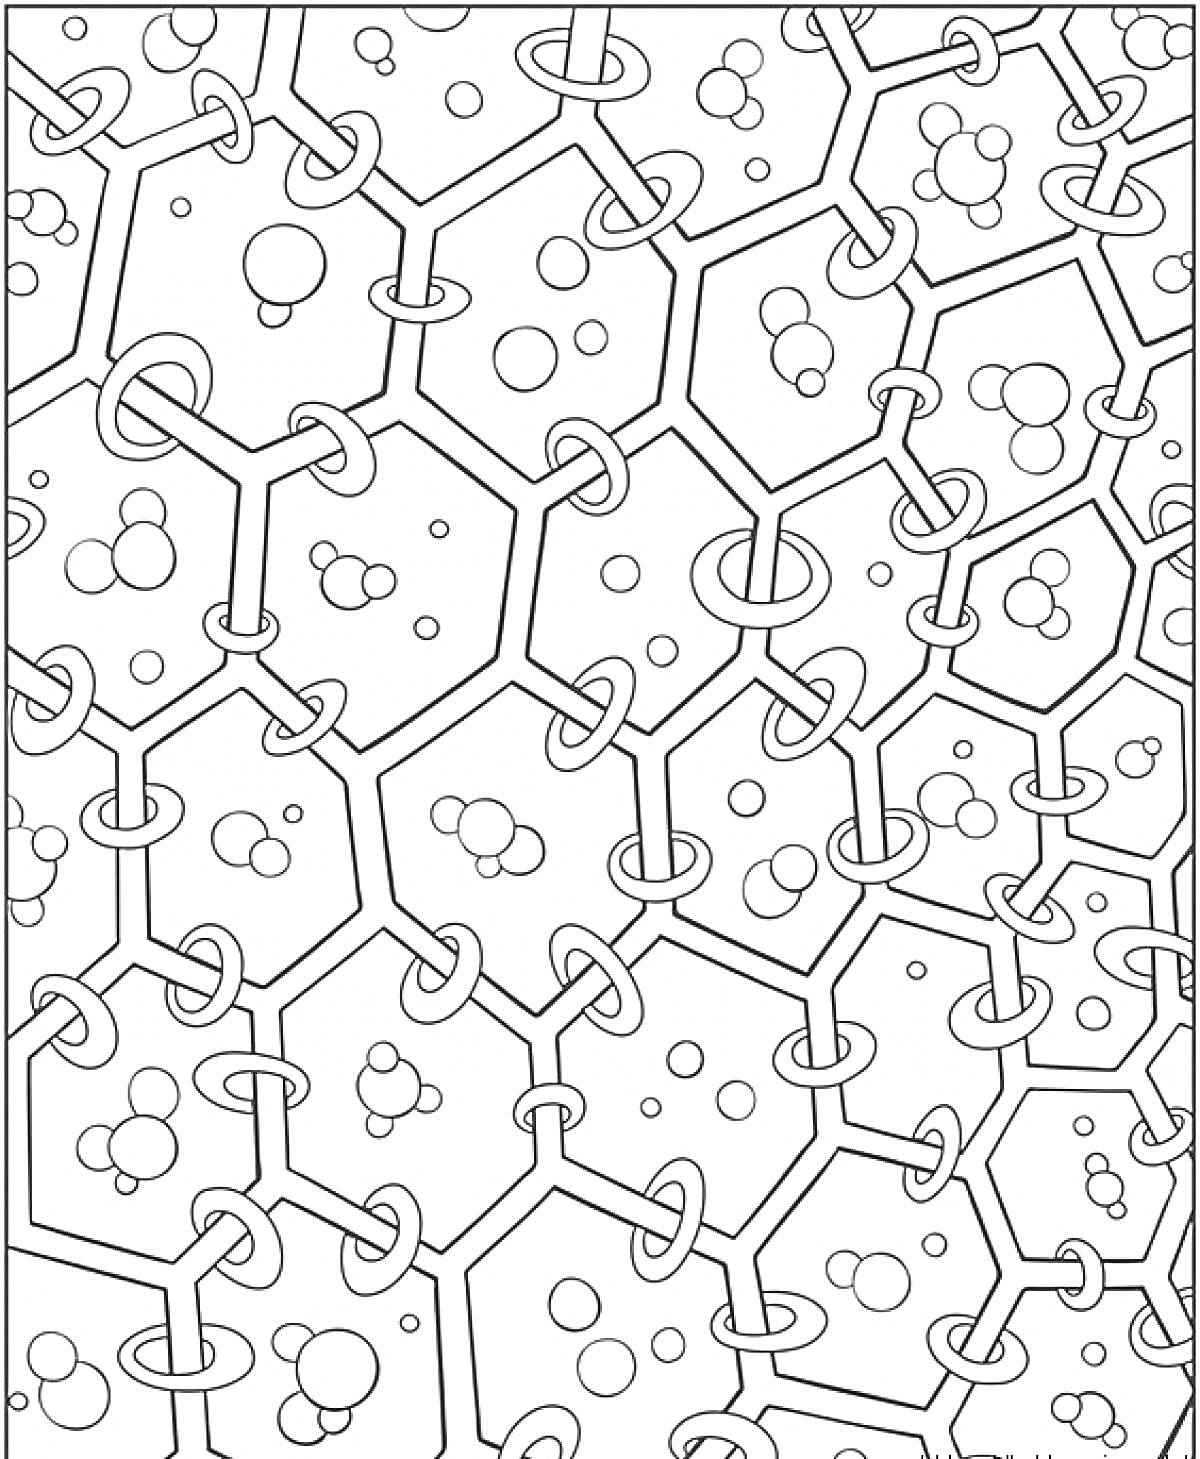 Узоры с шестиугольниками, кольцами и пузырьками